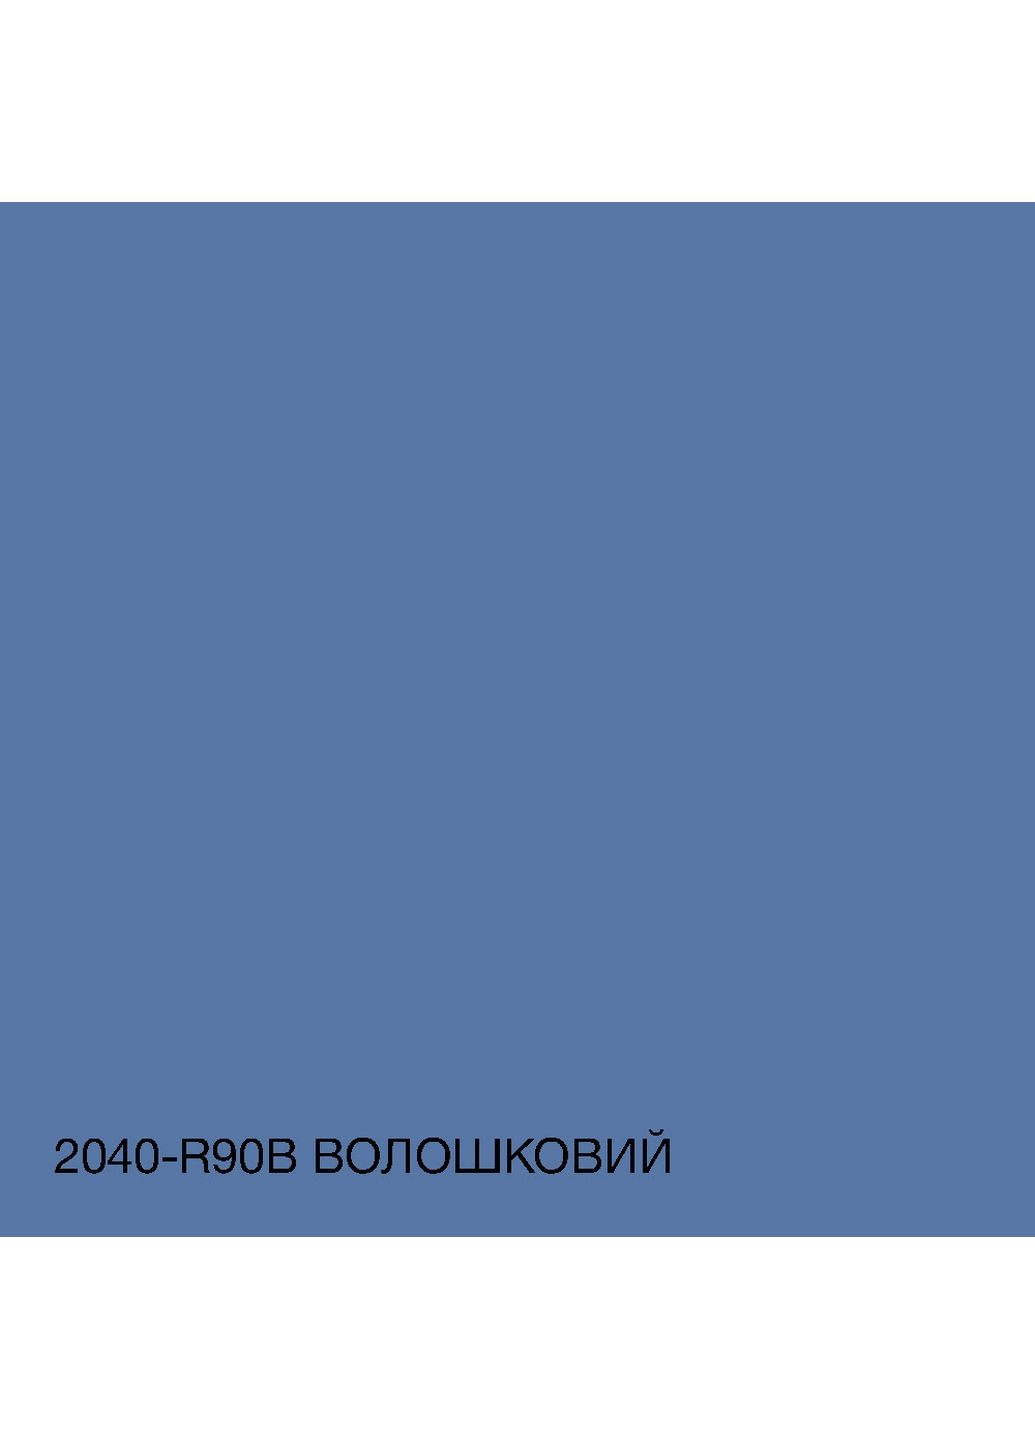 Краска фасадная акрил-латексная 2040-R90B 10 л SkyLine (289366645)